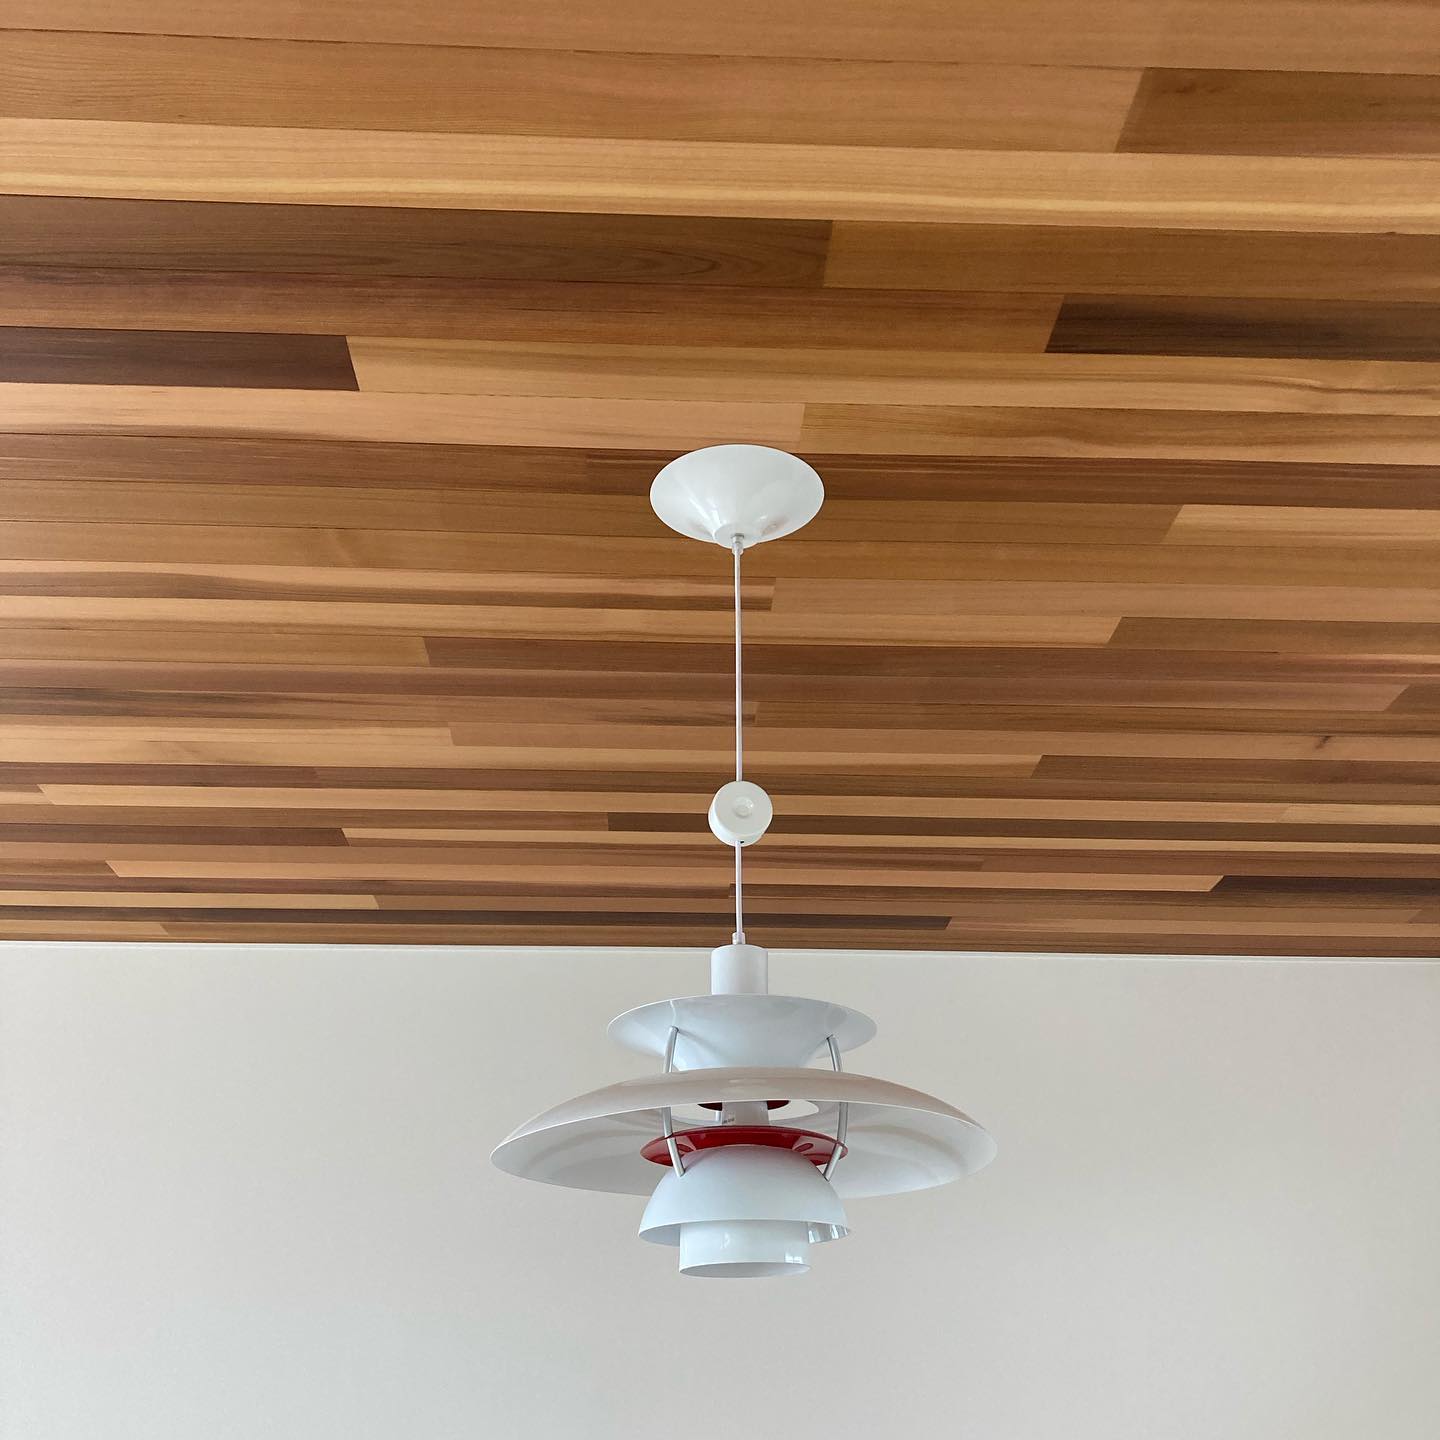 天井と照明器具です。レッドシダーの羽目板にルイスポールセンのPH5を選びました。レッドシダーとph5の組合せはいいですね！竣工が近づいて来て楽しみが膨らんでいきます。#archiworks #アーキワークス #設計事務所 #高島市 #建築家と建てる家 #レッドシダー #オスモカラー#壁紙 #リリカラ #ルイスポールセン #ph5 #建築中 #電球はまだ無い